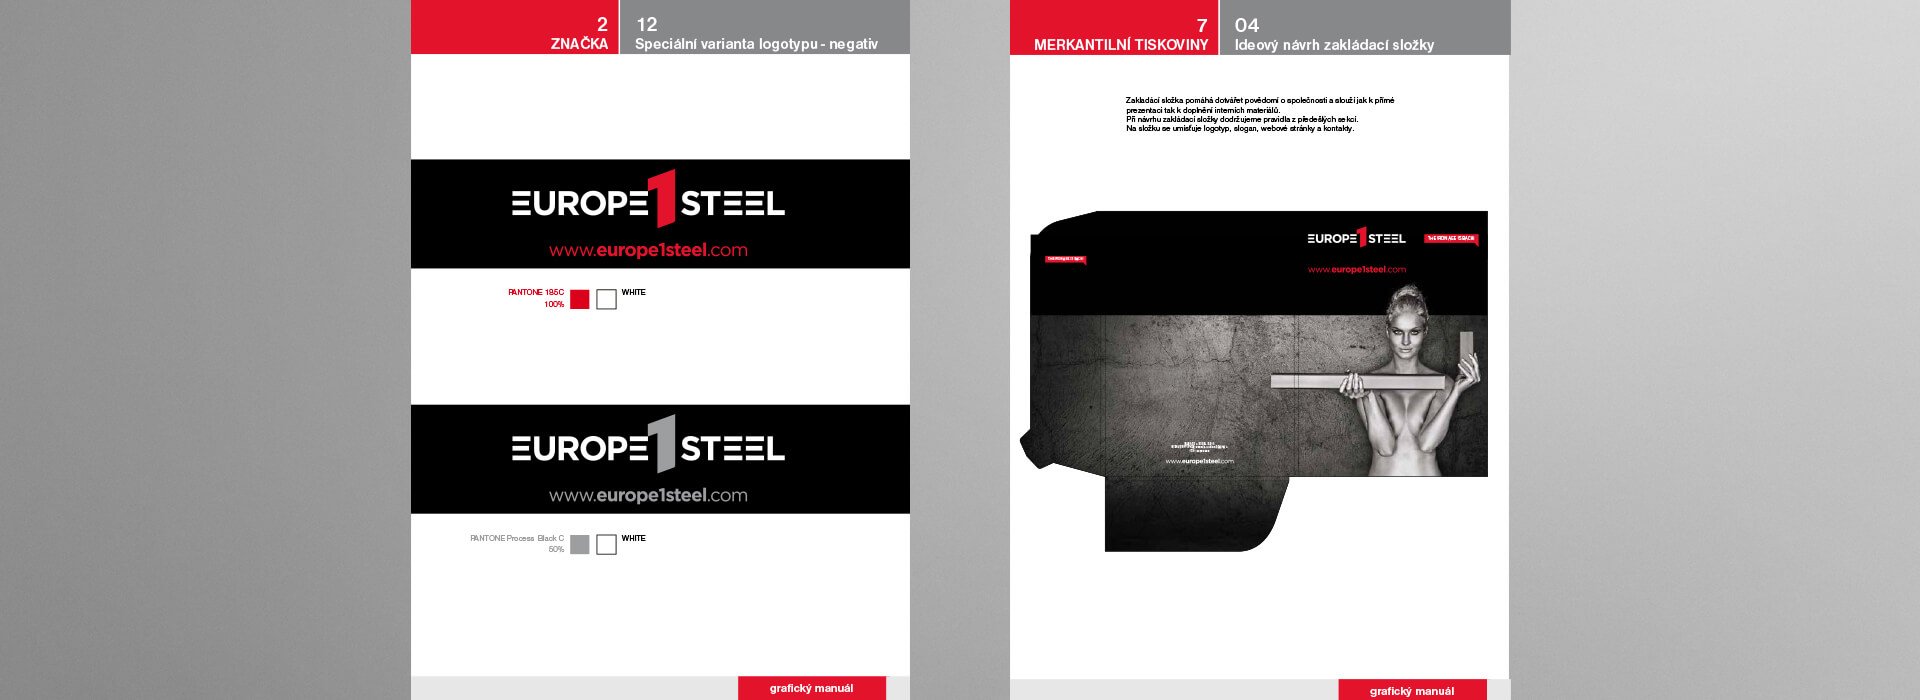 Ukázka grafického a vizuálního stylu firmy EUROPE 1 STEEL na prezentačních materiálech